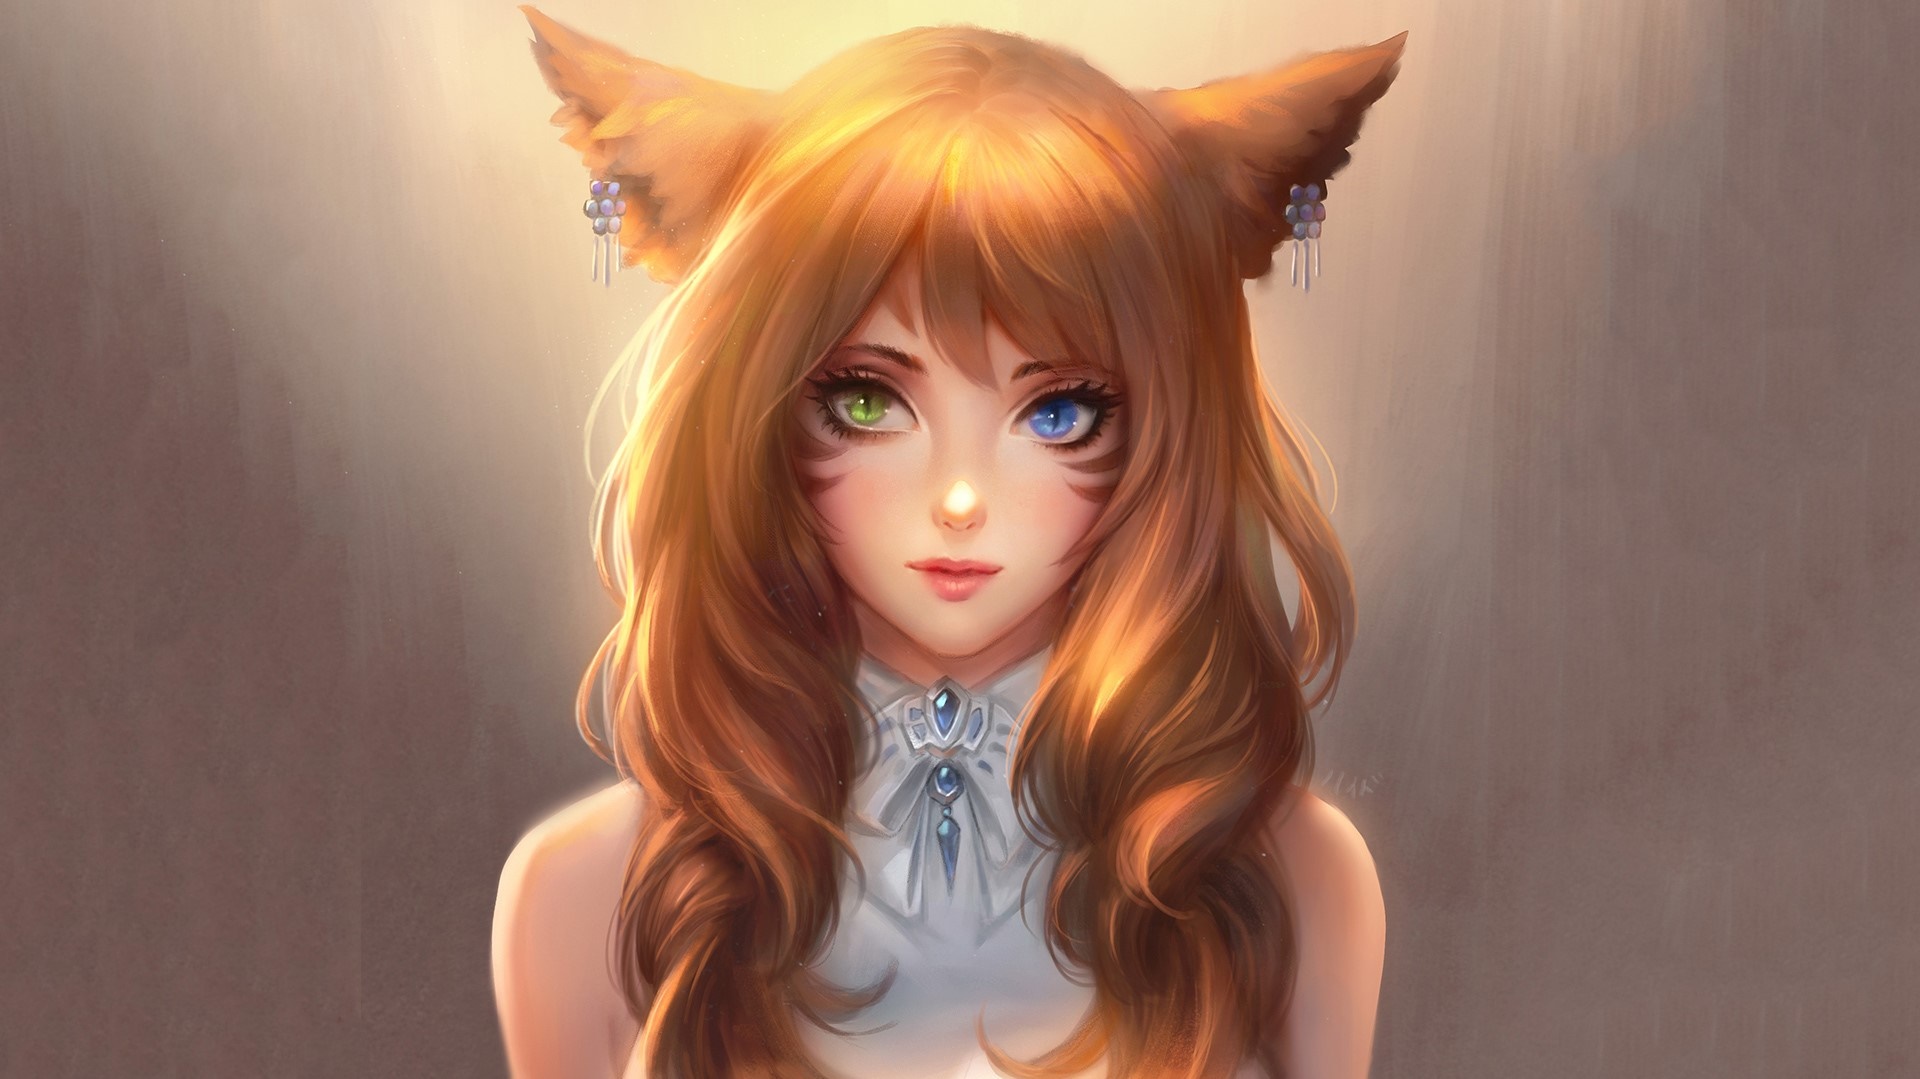 Chibi fox girl HD wallpapers | Pxfuel